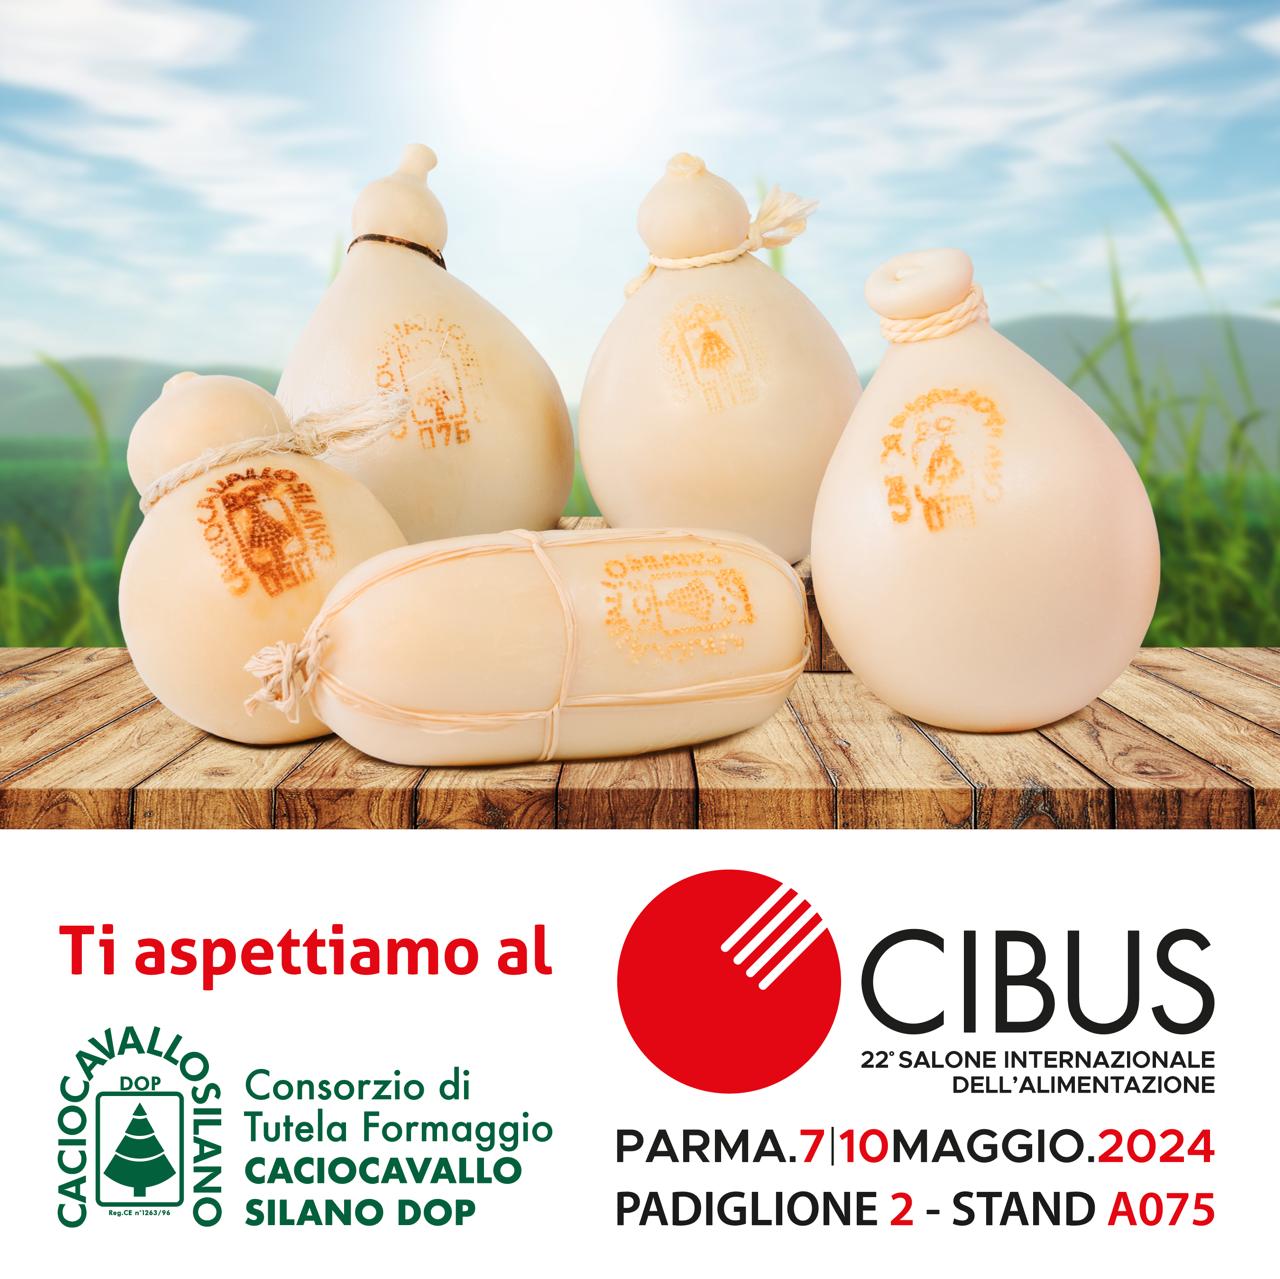 Il Consorzio Caciocavallo Silano DOP al Cibus di Parma dal 7 al 10 maggio